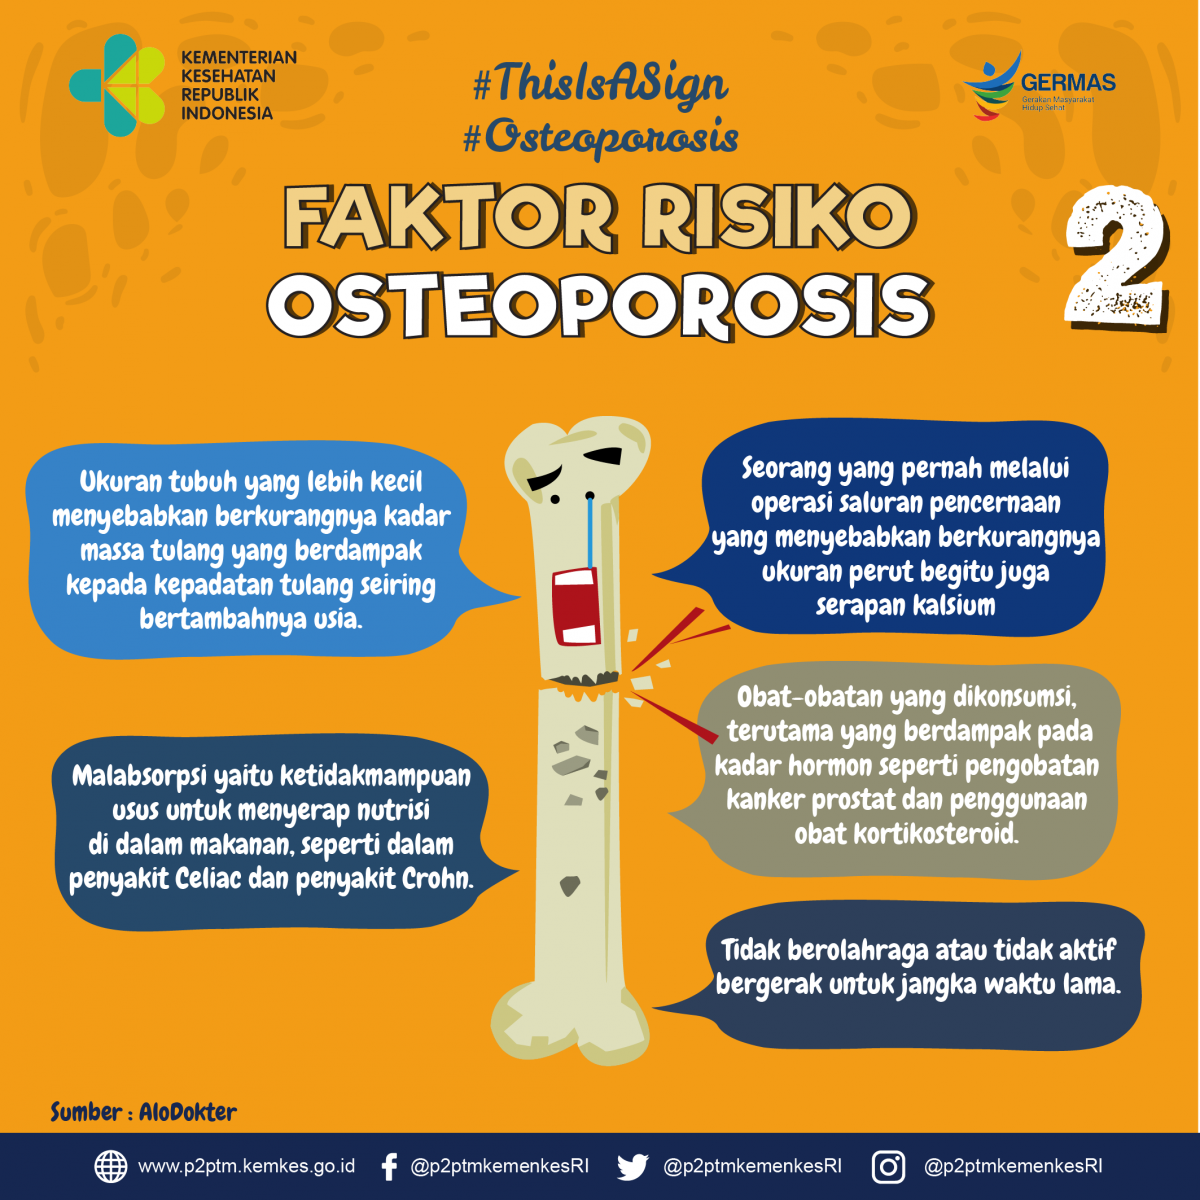 Apa saja faktor risiko yang menyebabkan Osteoporosis? Bagian 2